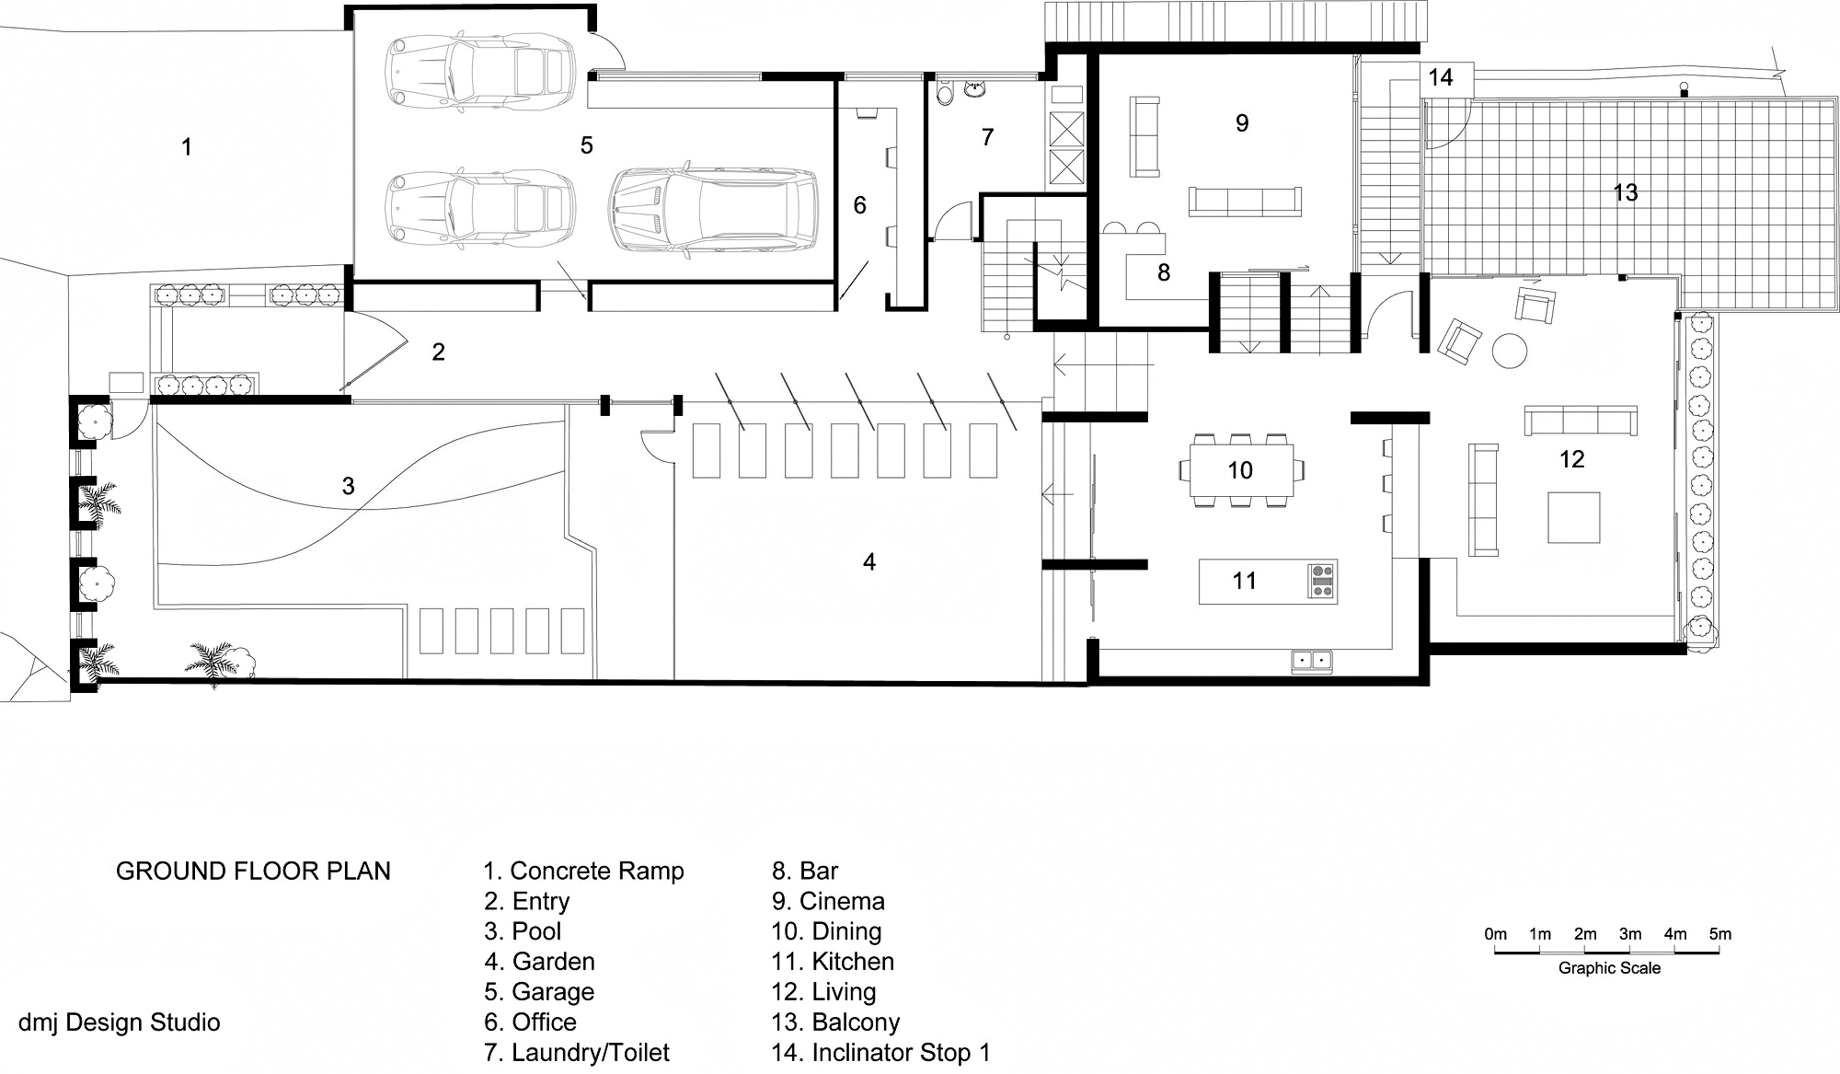 Ground Floor Plan – 36 Kangaroo Point Road Residence – Kangaroo Point, Sydney, NSW, Australia